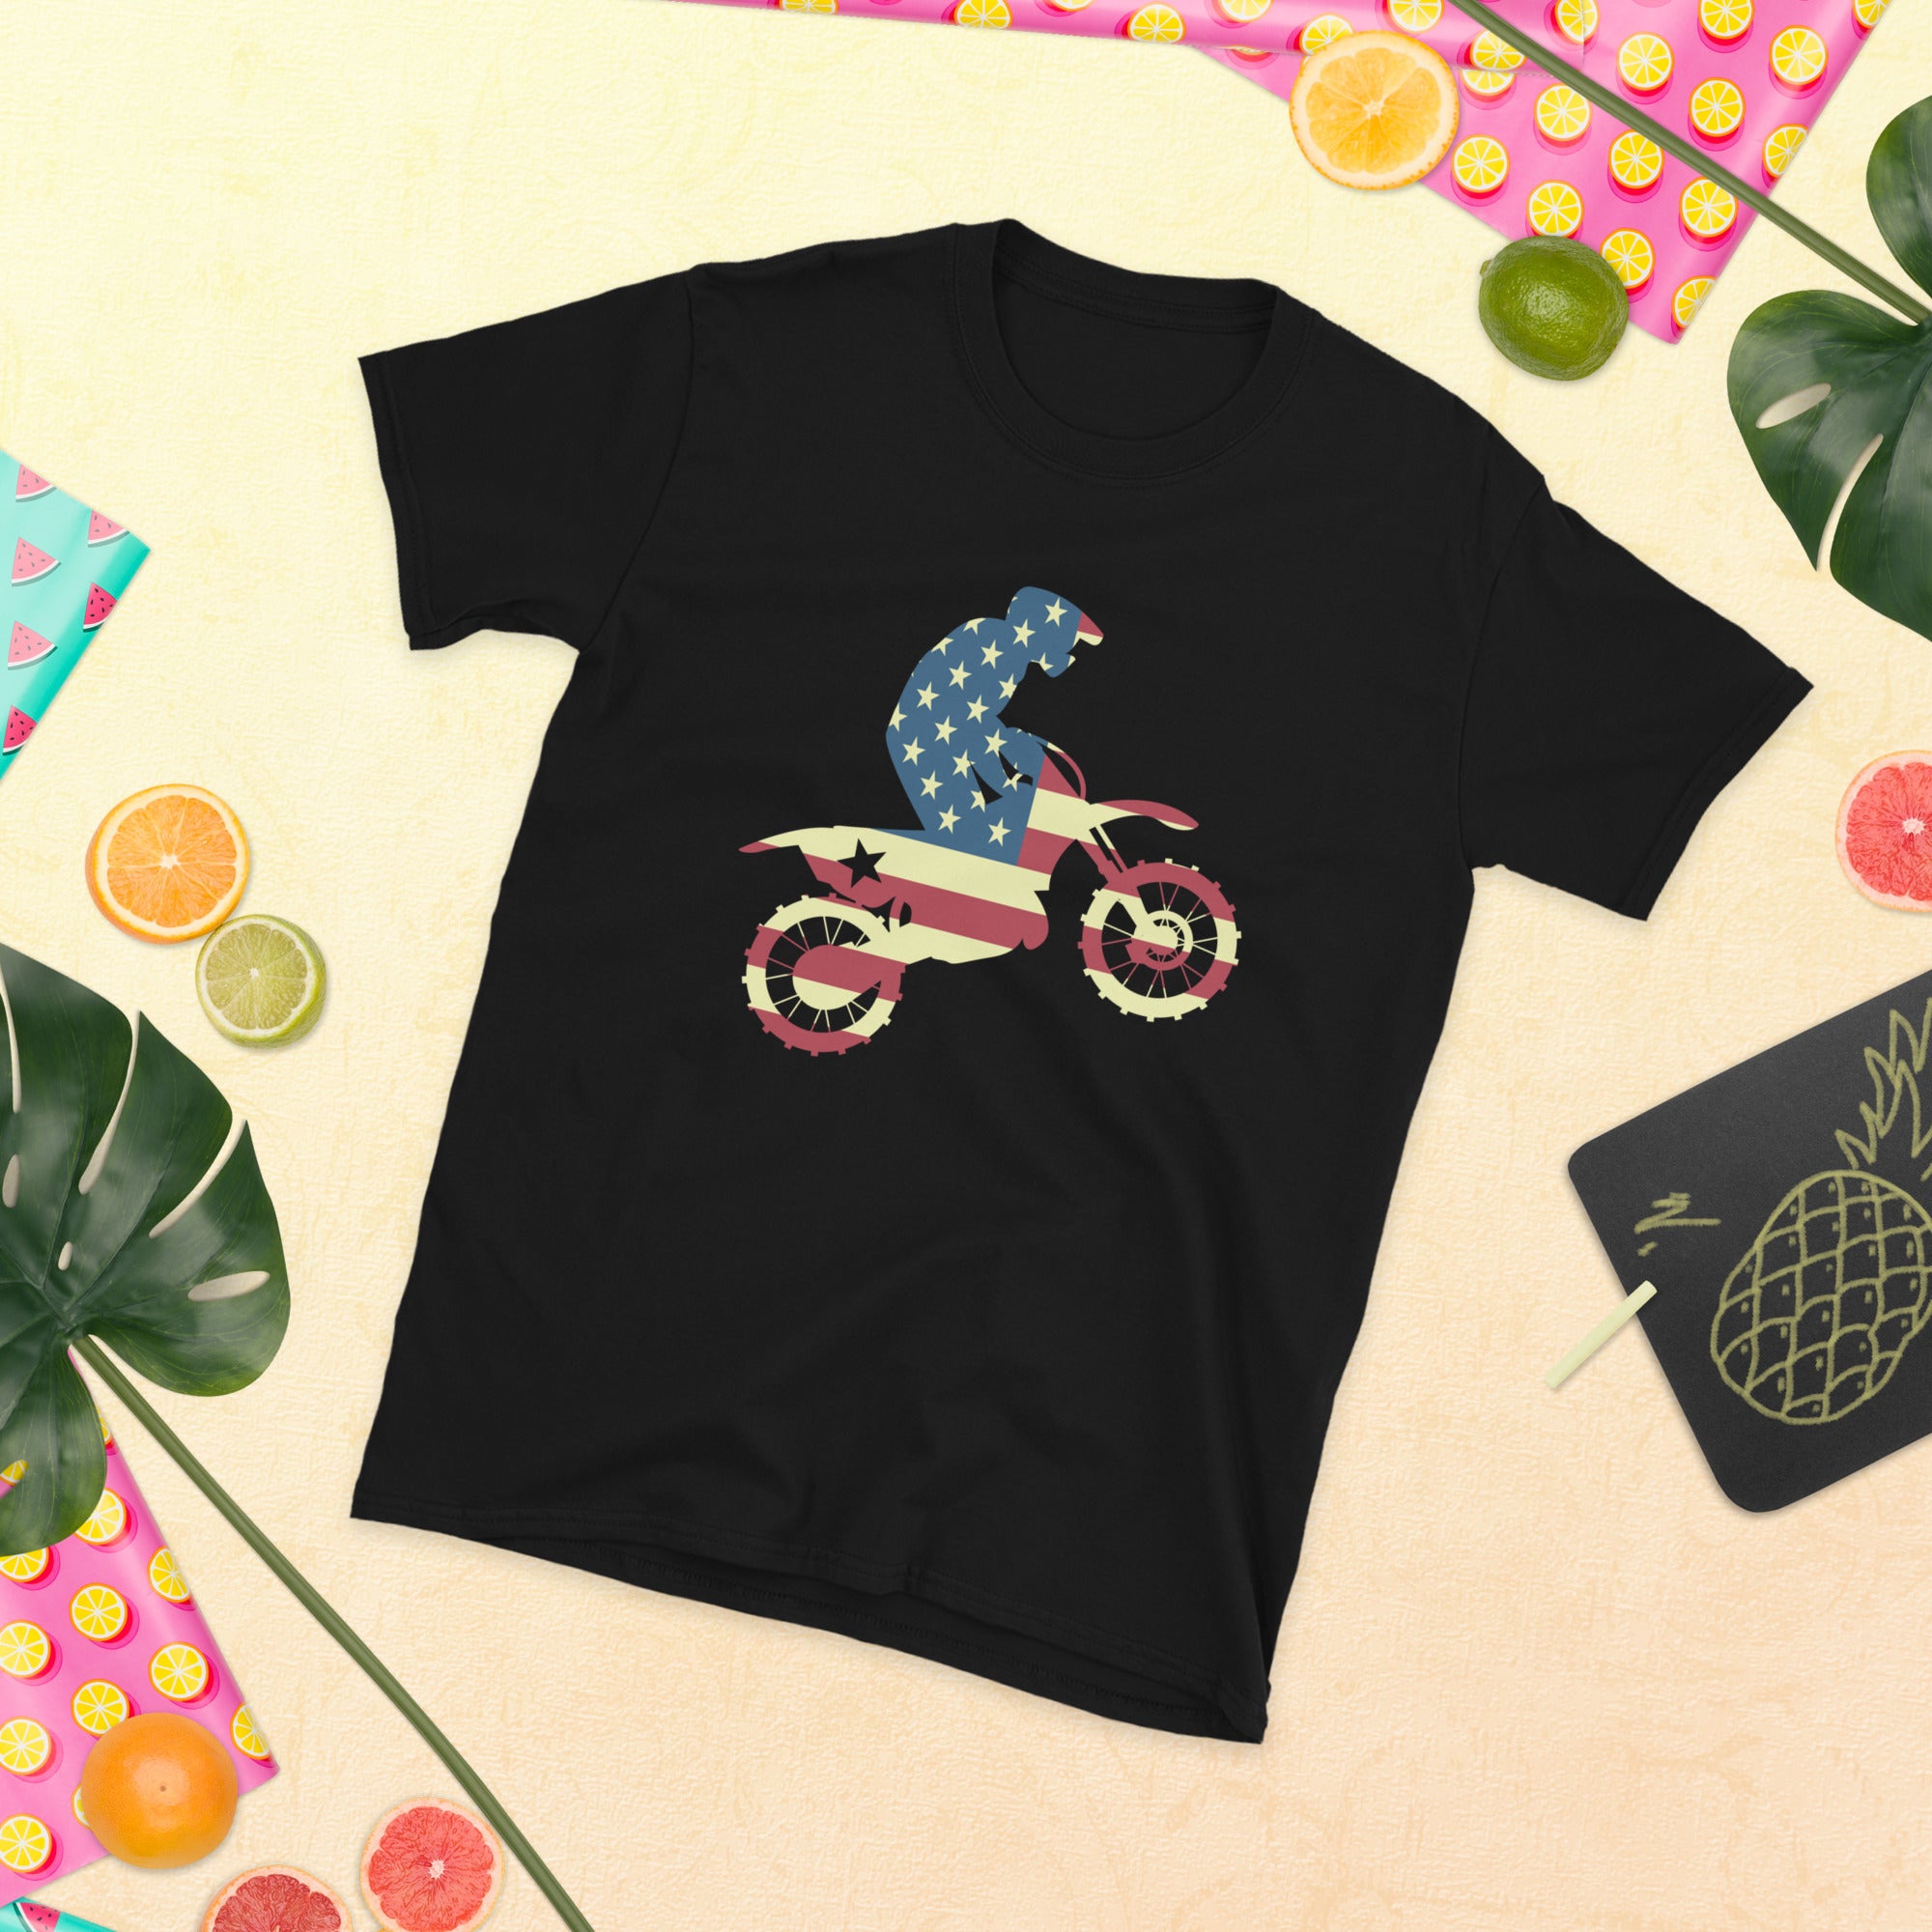 Camiseta de moto de cross con bandera estadounidense de EE. UU., camisa de moto de cross, regalo de moto de cross, camisa de moto de cross, regalo de moto de cross, camisa amante de la moto de cross, camiseta de motociclista